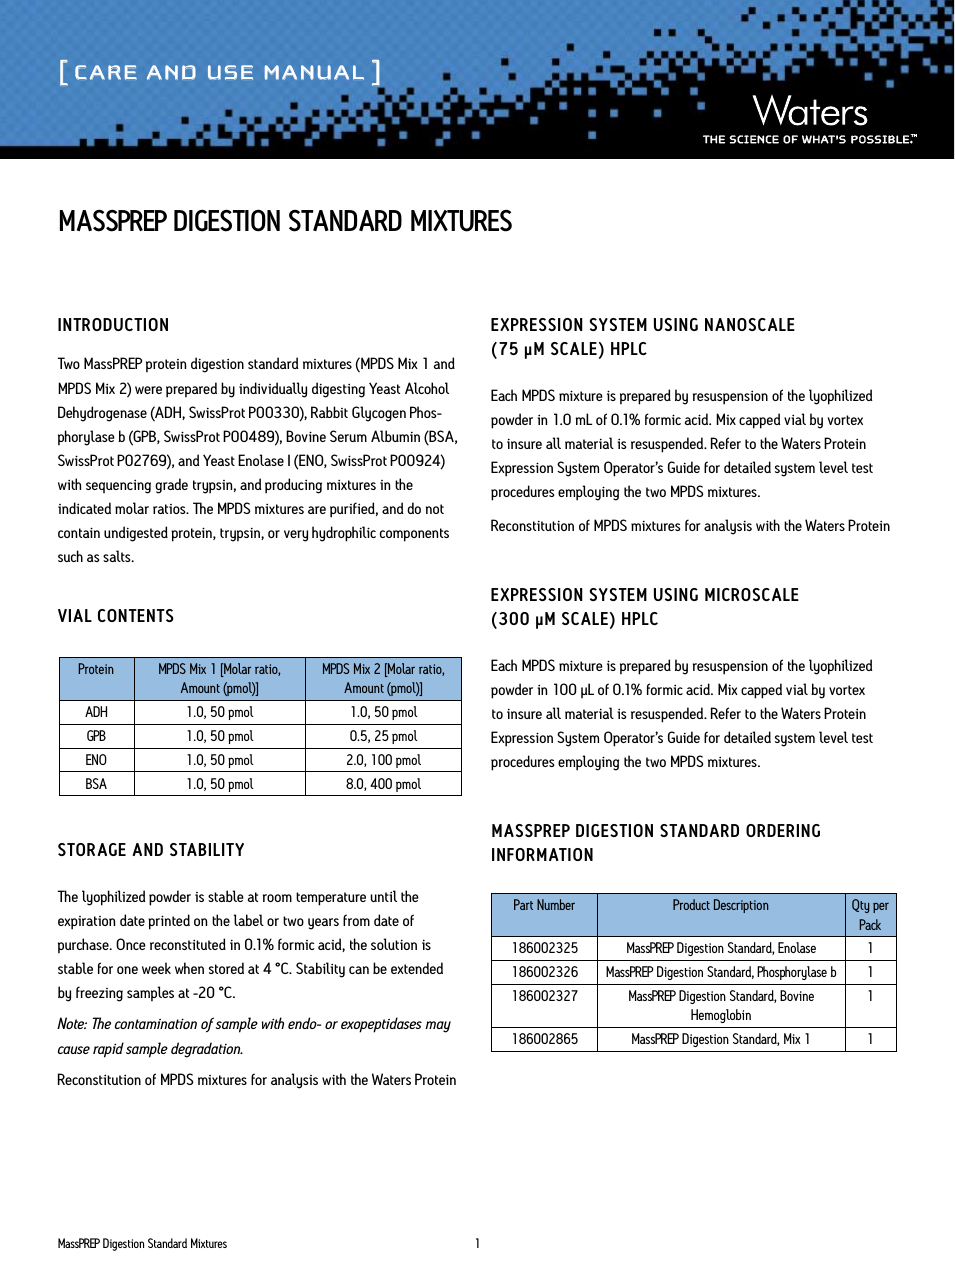 MassPREP Digestion Standard Mixtures